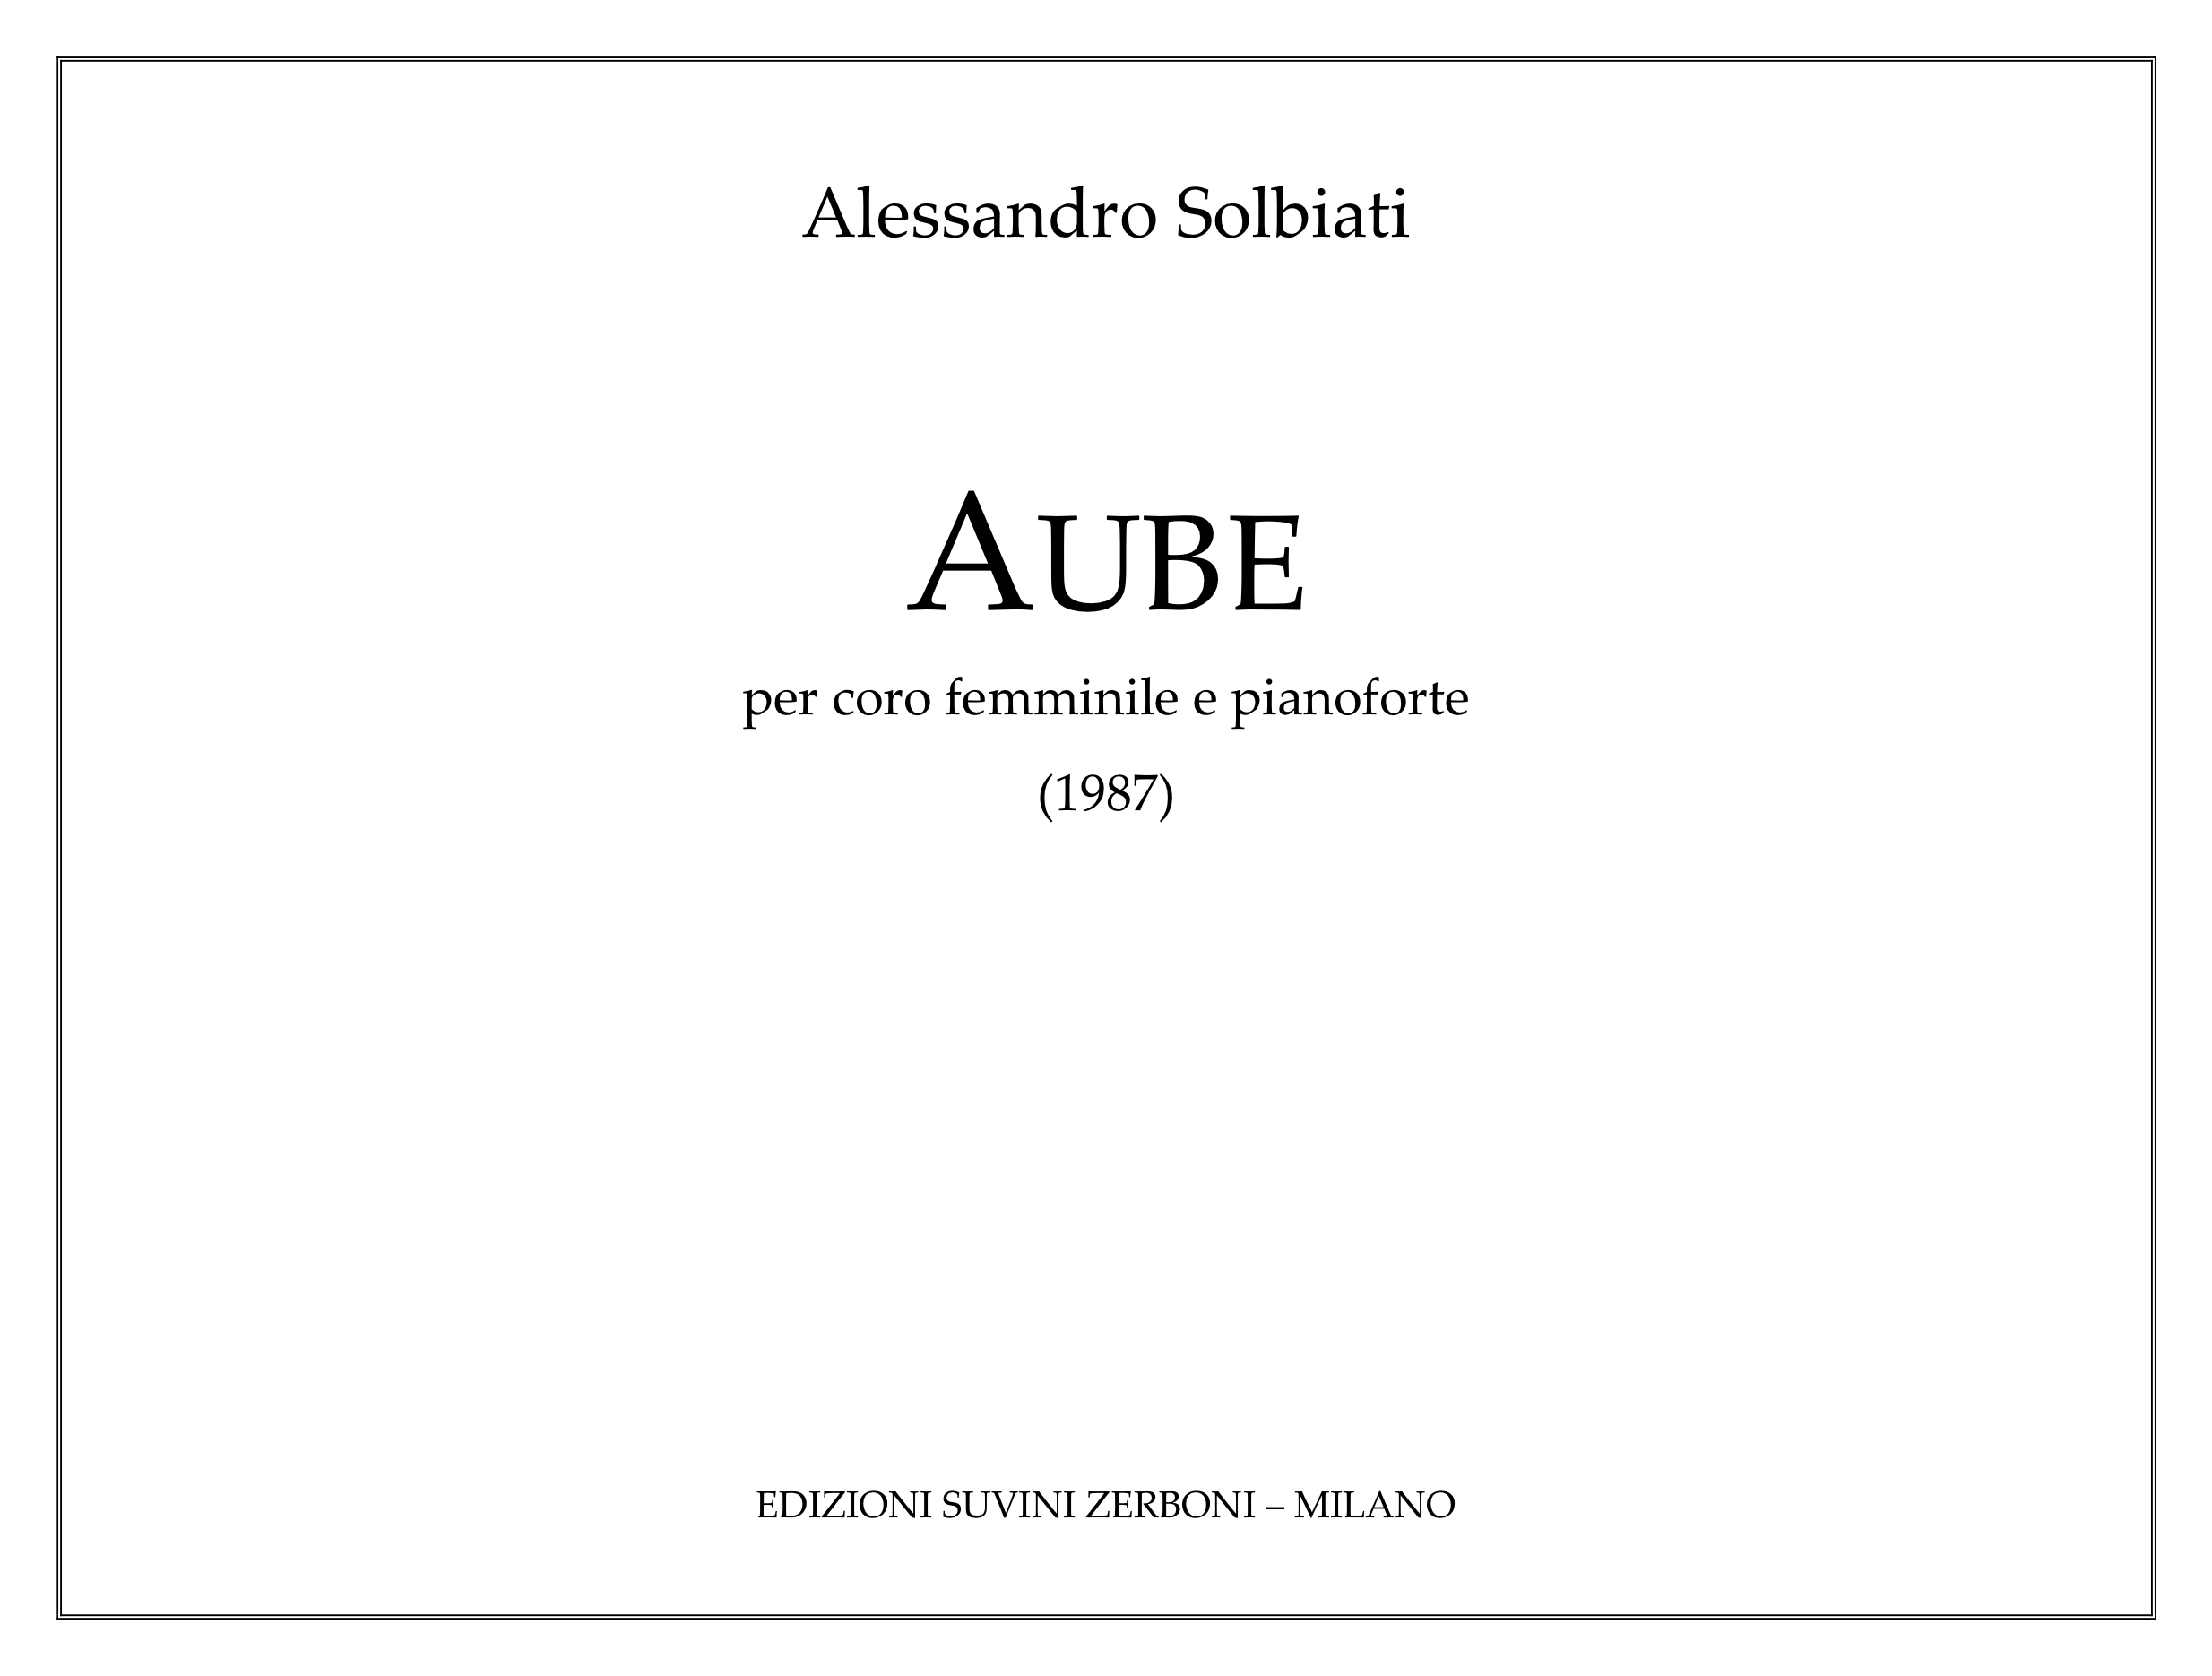 Aube_per coro e pianoforte_Solbiati 1